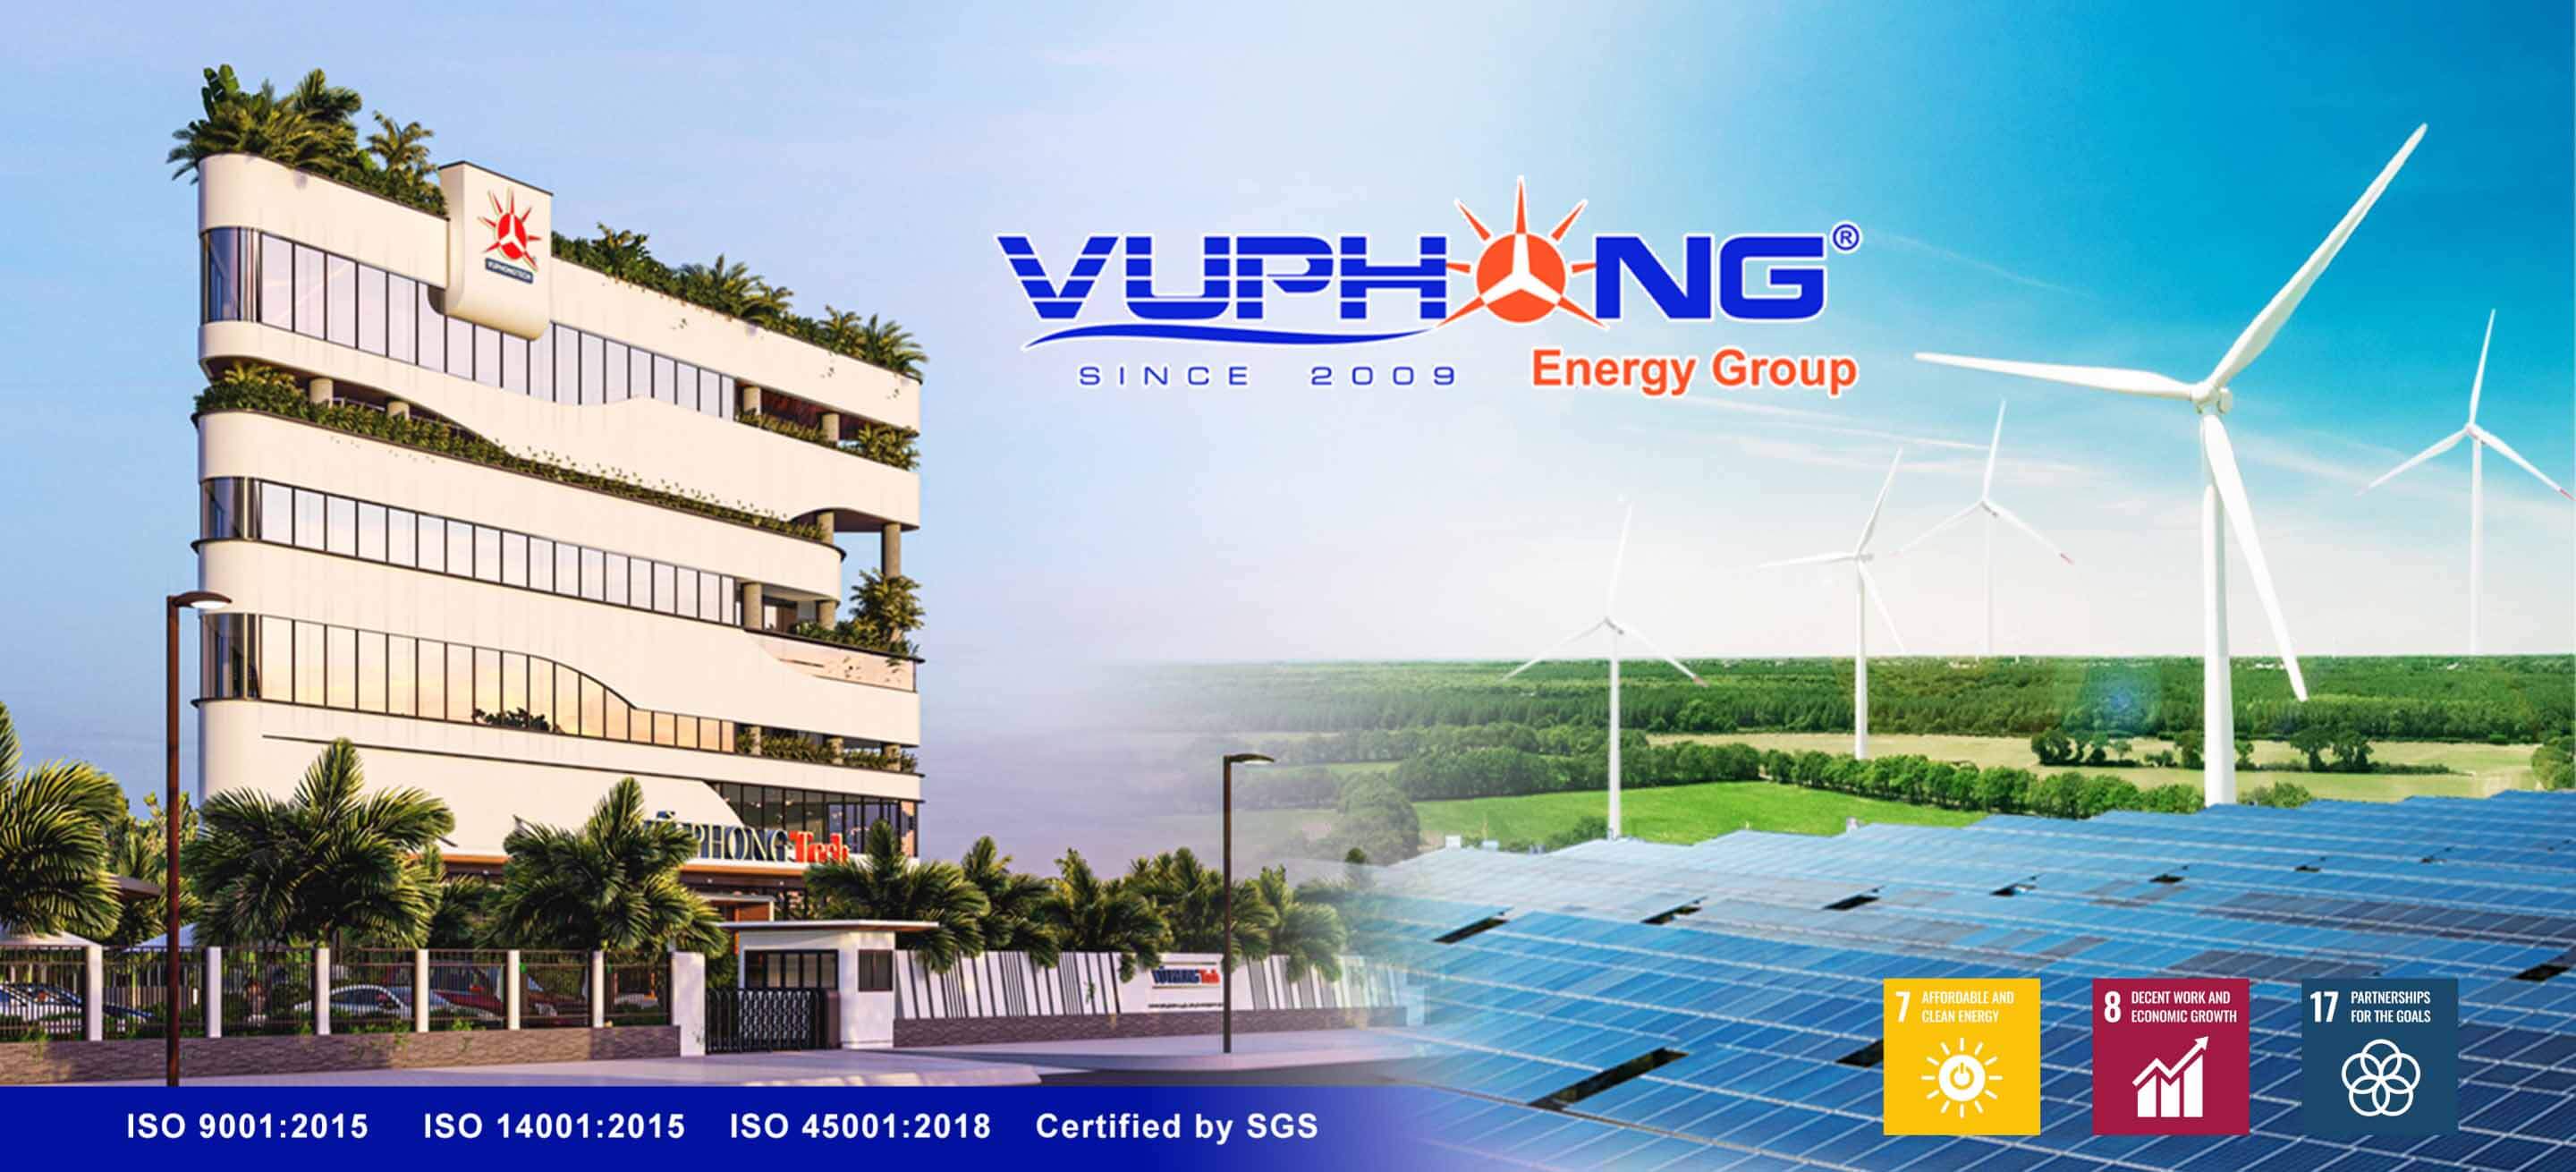 Vu Phong Energy Group JSC: Solar & Wind Power